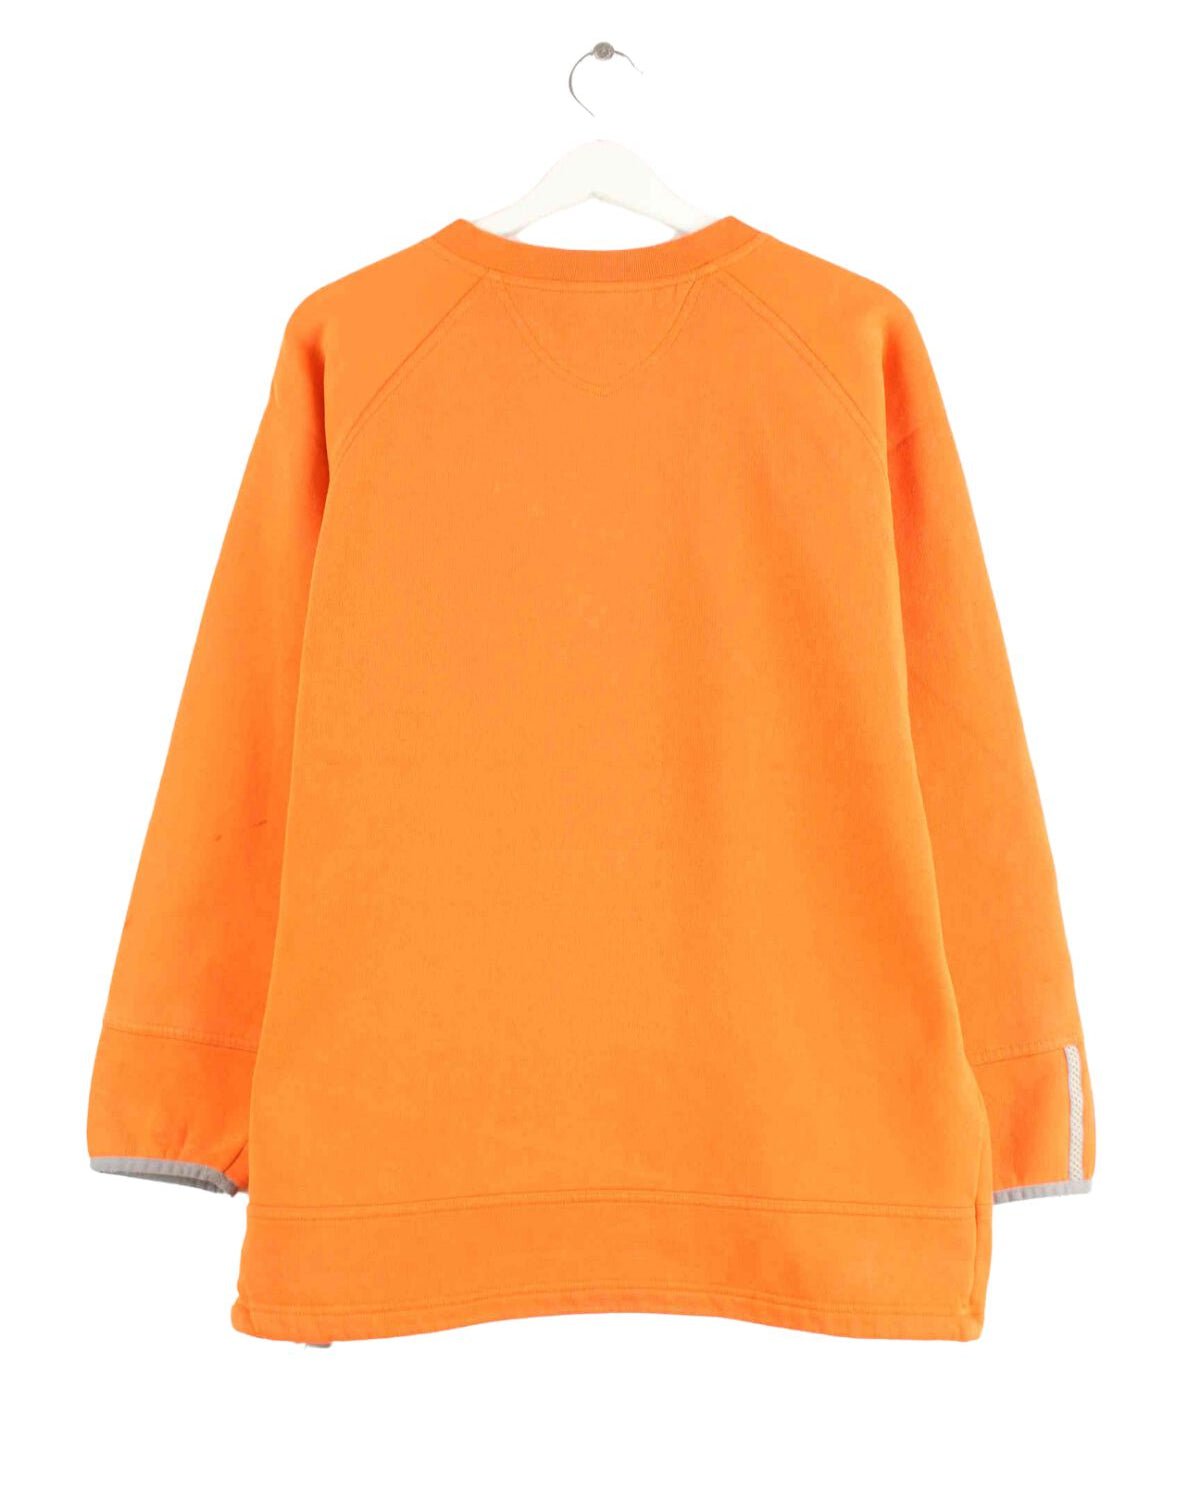 Adidas 90s Vintage Basic Sweater Orange L (back image)